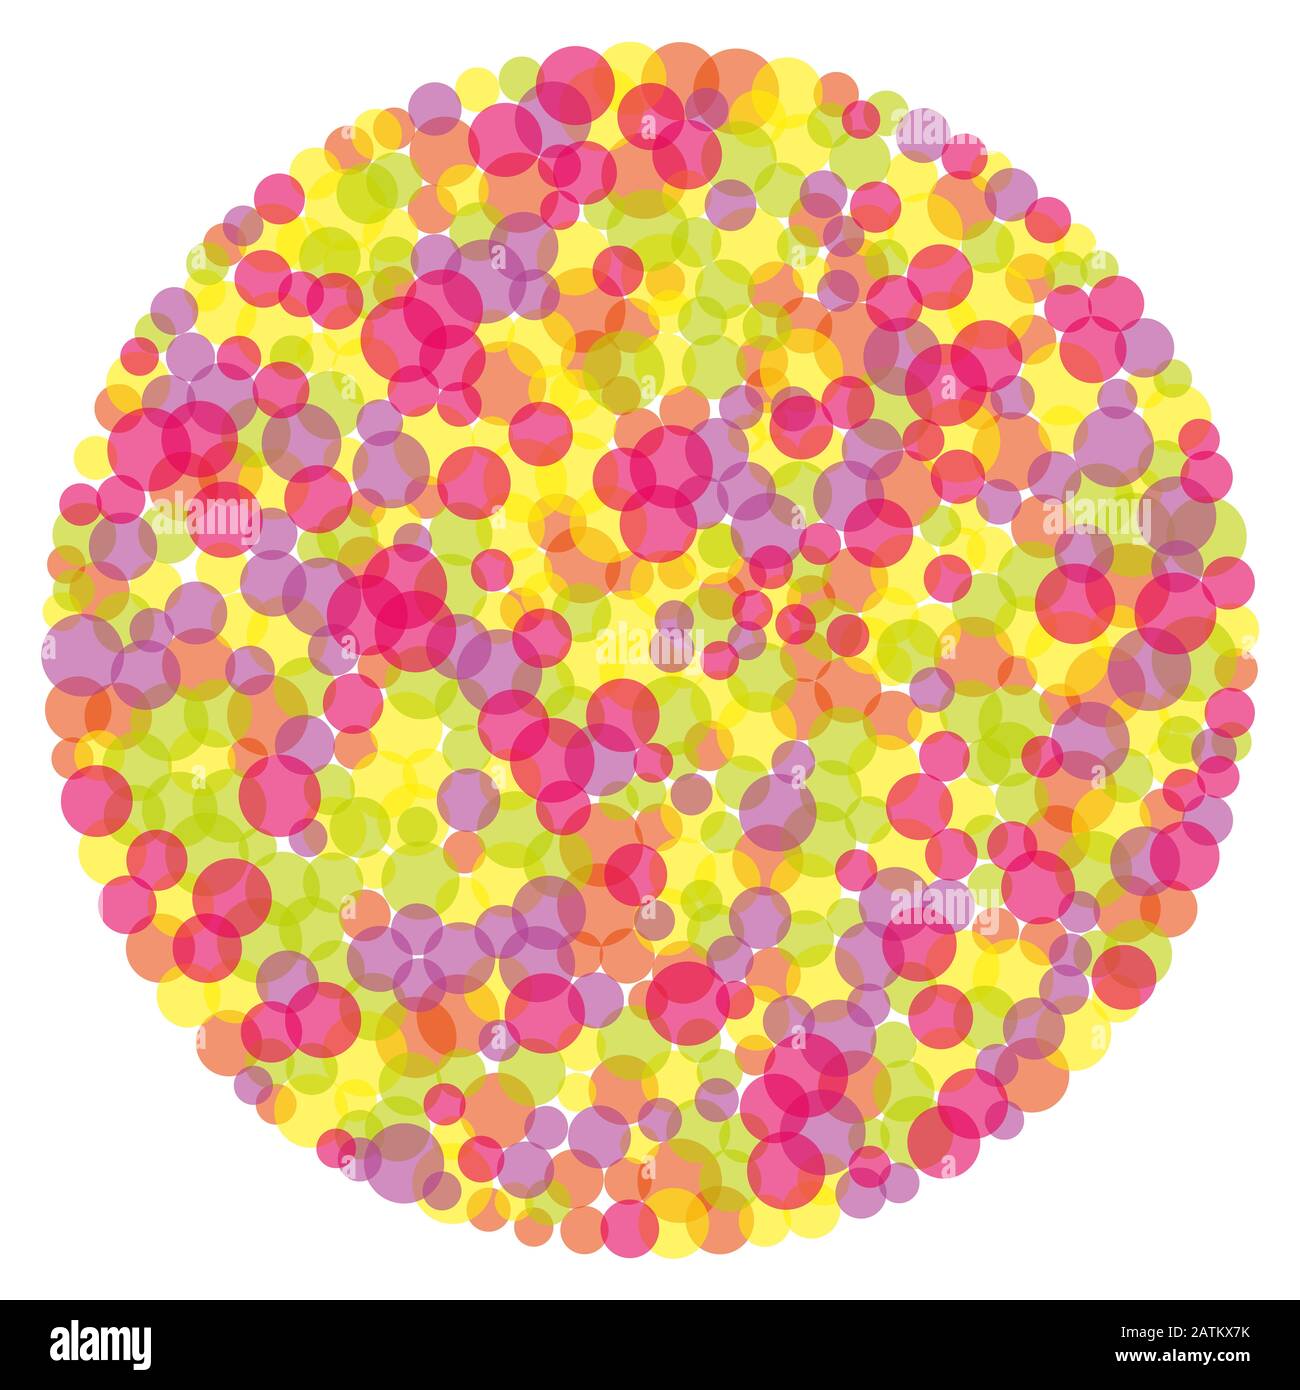 Kreisform mit bunten Kreisen. Zufällig platzierte und überlappende Punkte mit roter, gelber, grüner, violetter und rosafarbener Farbe. Stockfoto